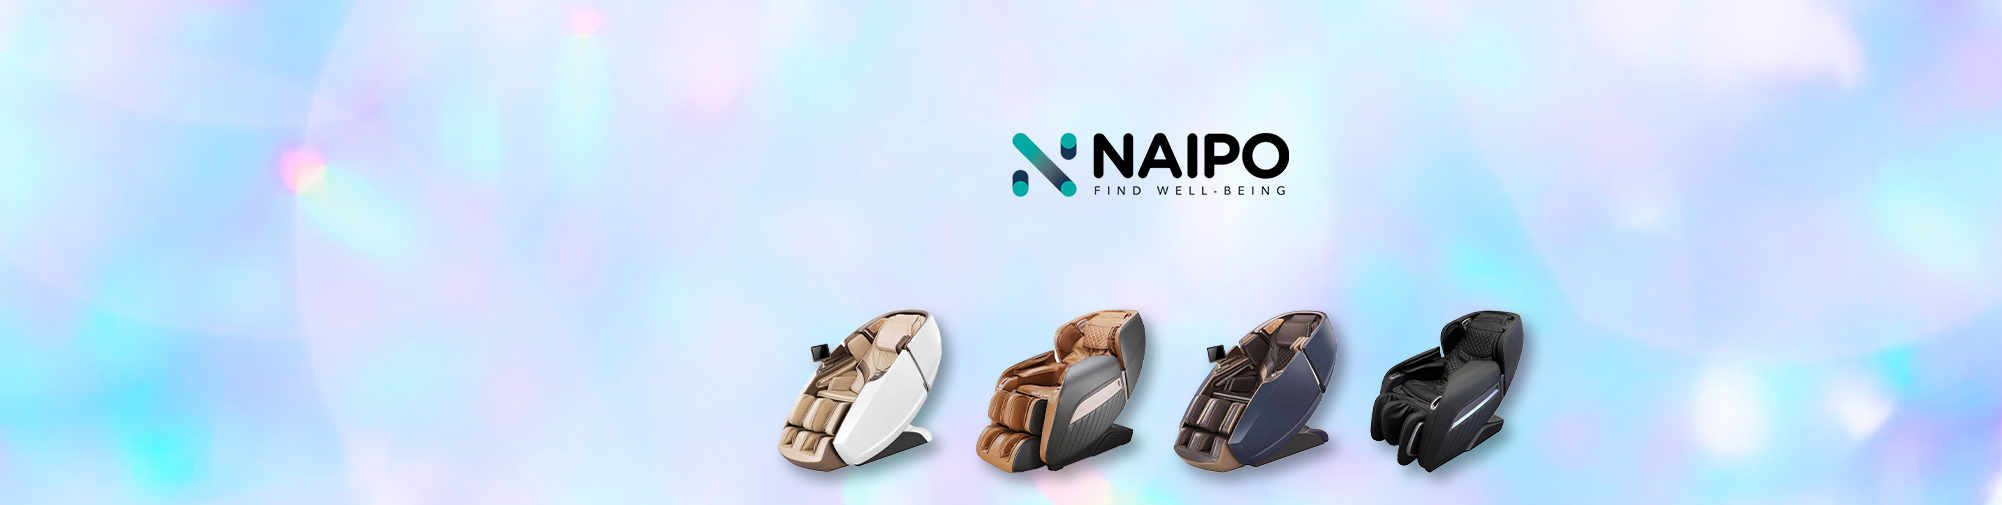 NAIPO - 전 세계를위한 마사지 제품| 마사지 의자 세계